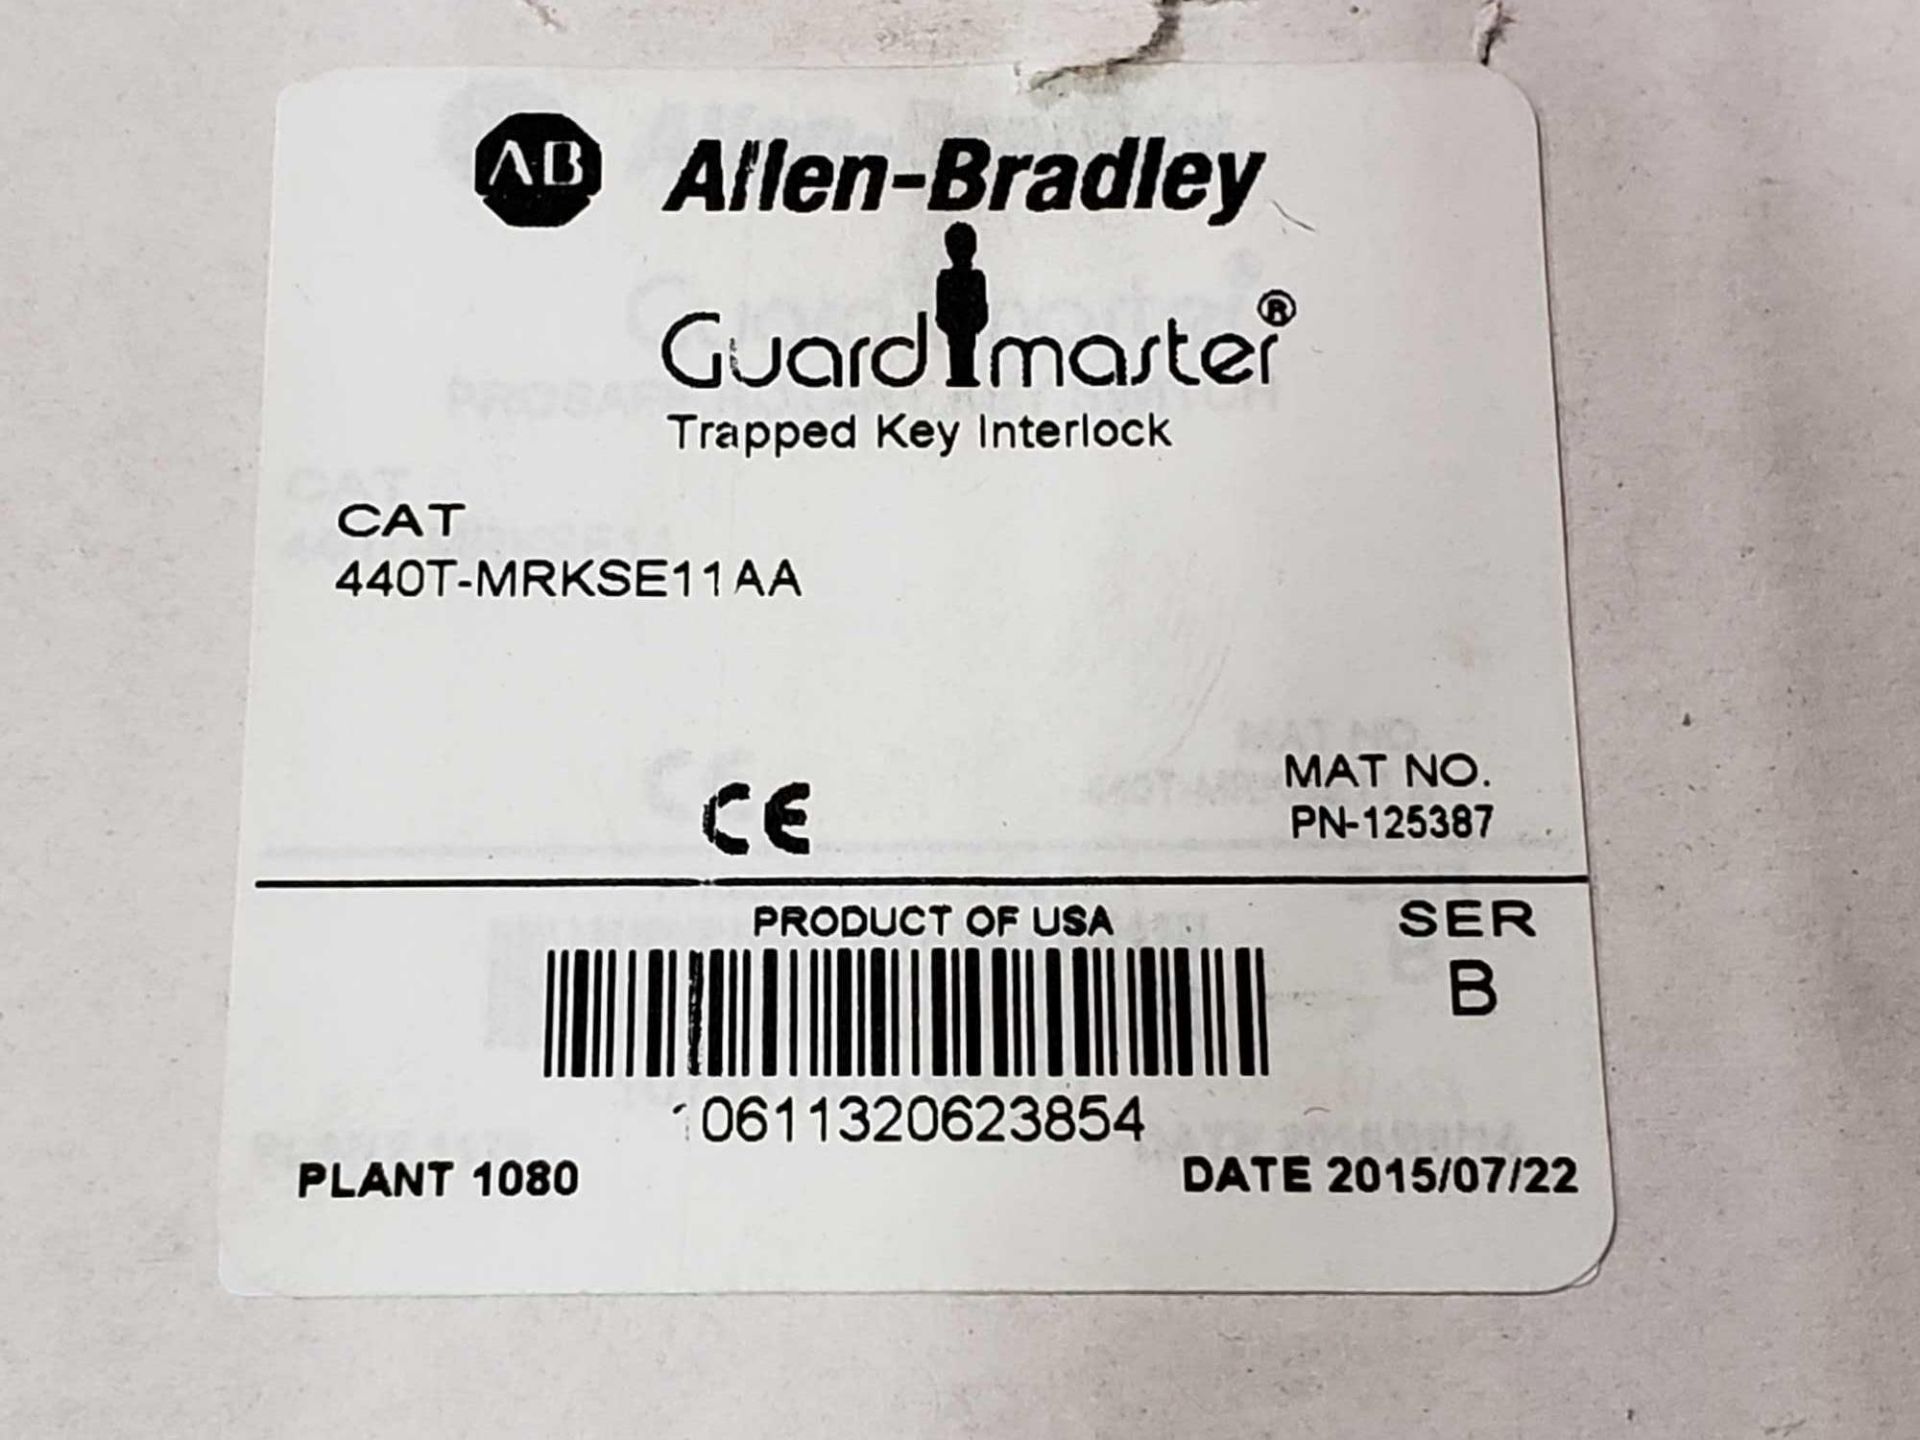 Allen Bradley Guardmaster catalog 440T-MRKSE11AA. New in box. - Image 2 of 2